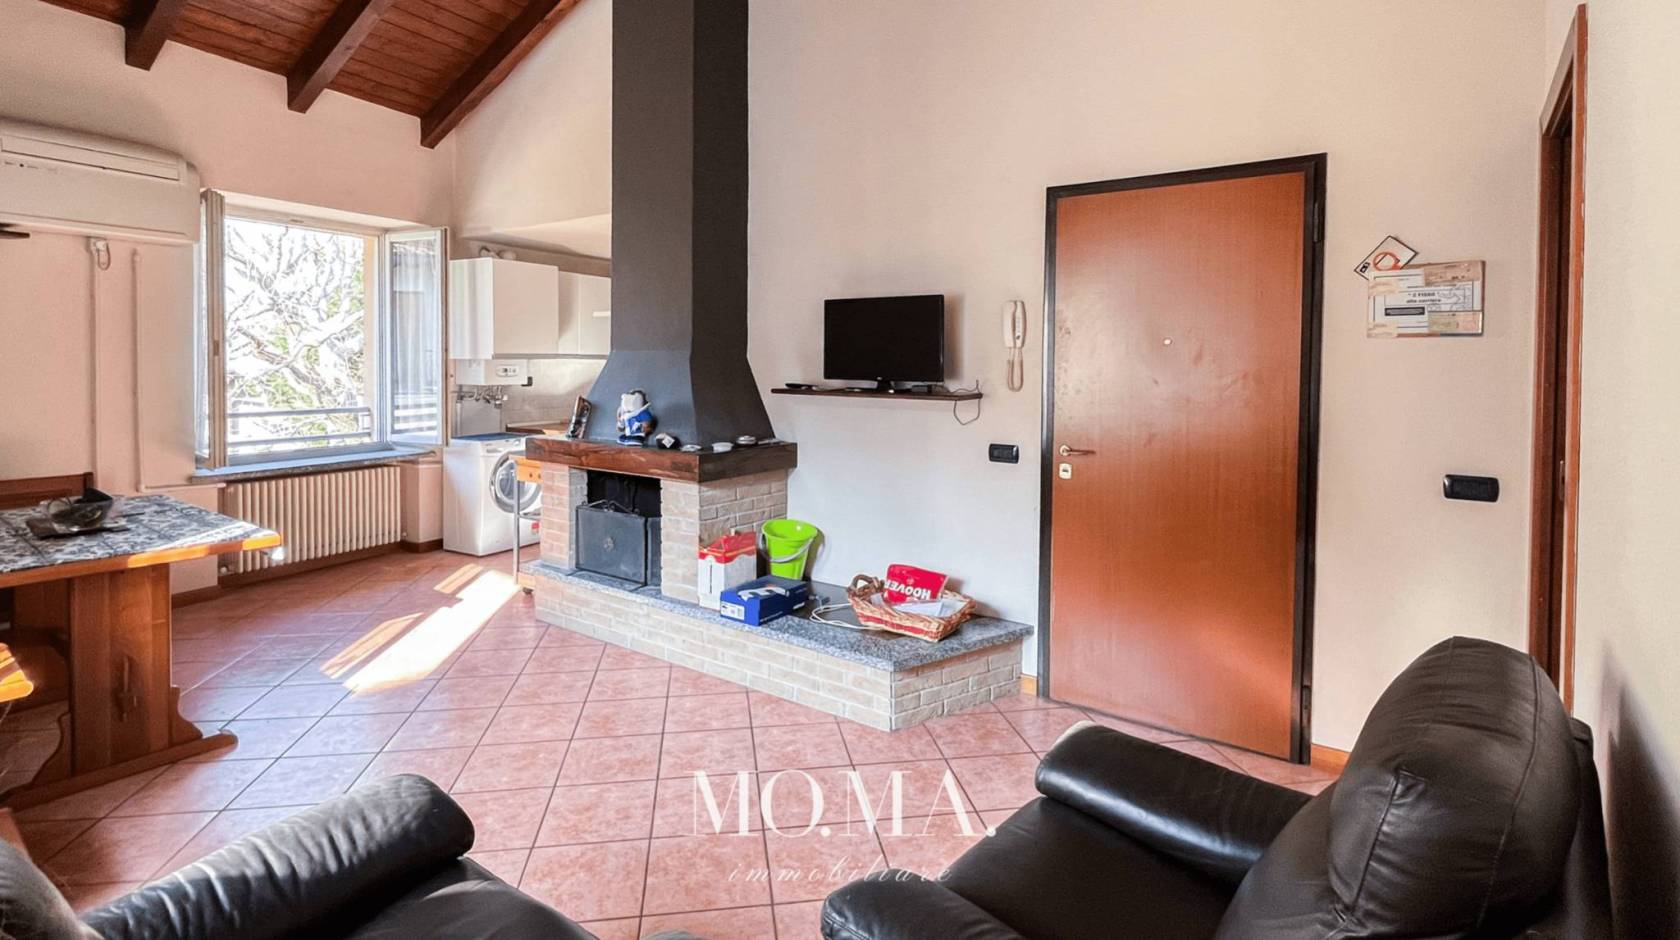 Appartamenti in affitto in zona Oggiono, Casatenovo - Lecco - Immobiliare.it